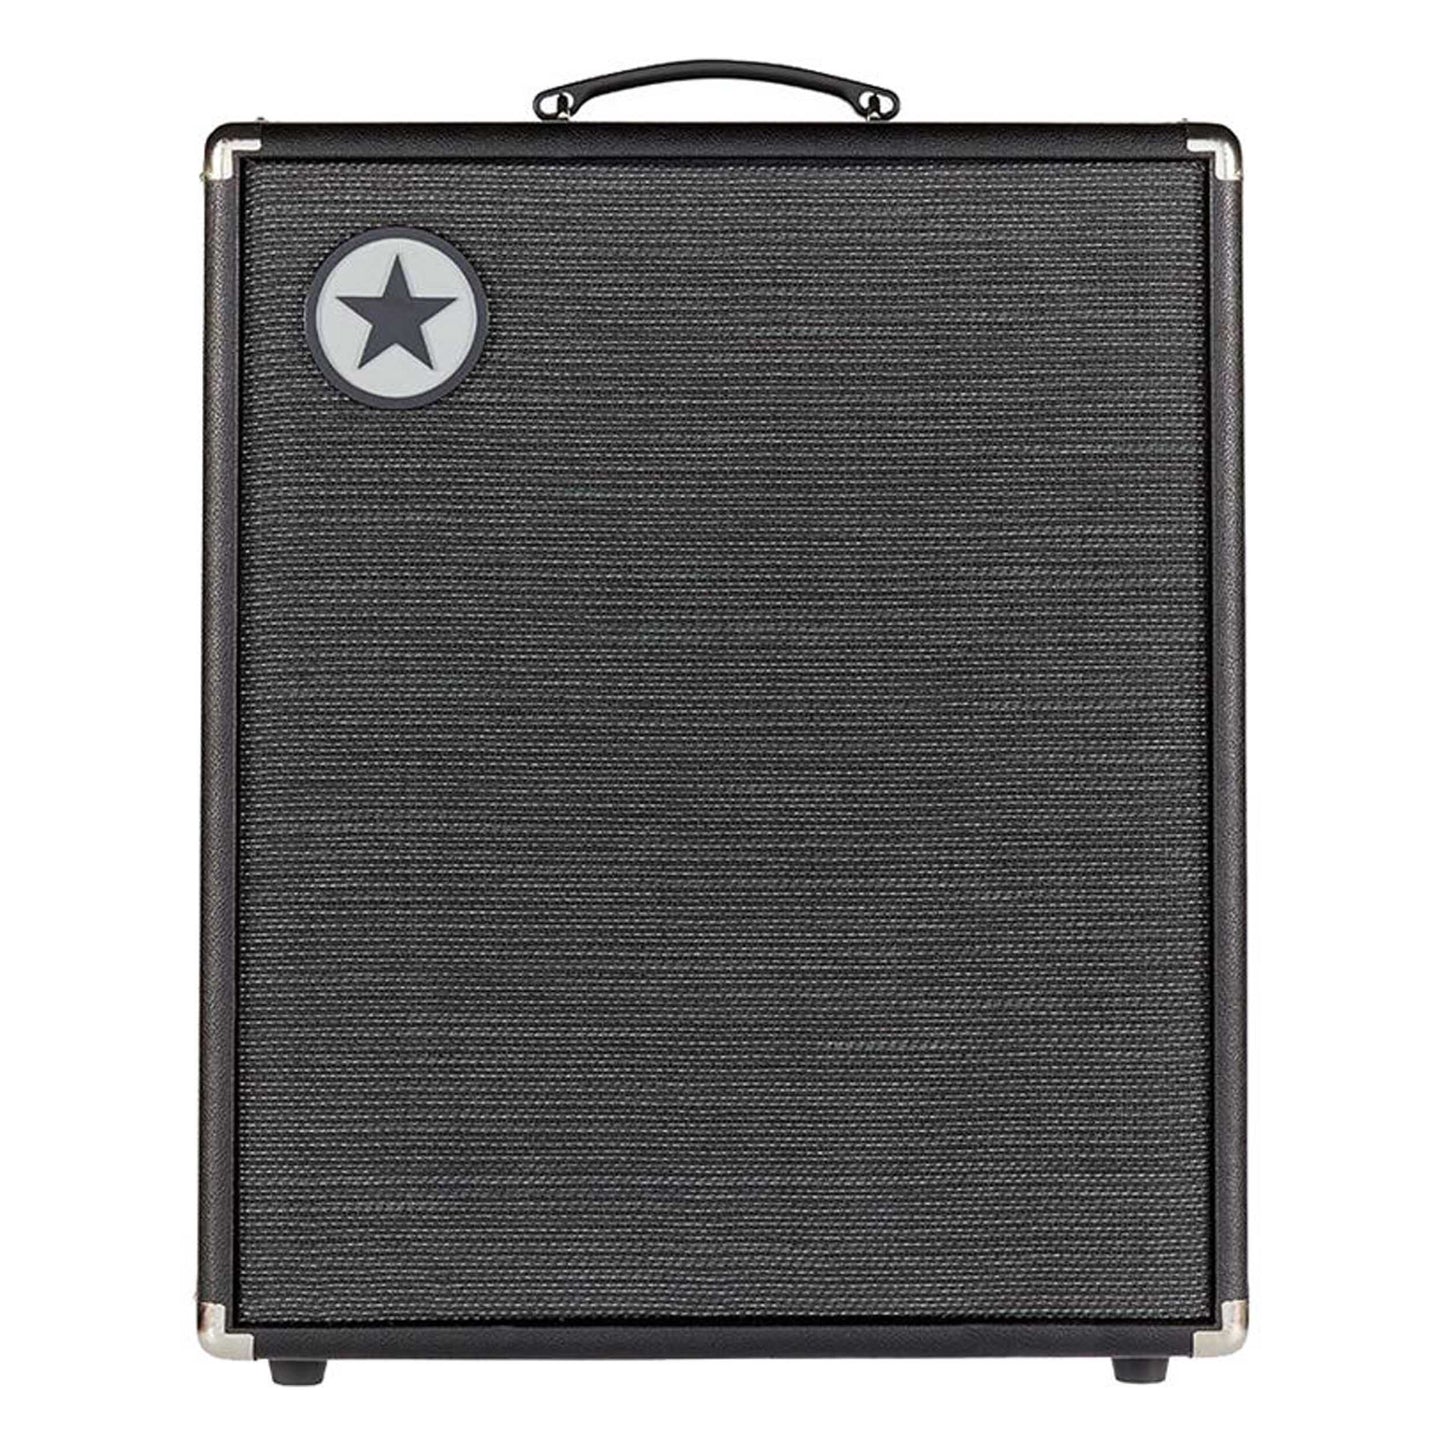 Blackstar Unity Bass 500 2x120" 500-Watt Bass Combo Amplifier